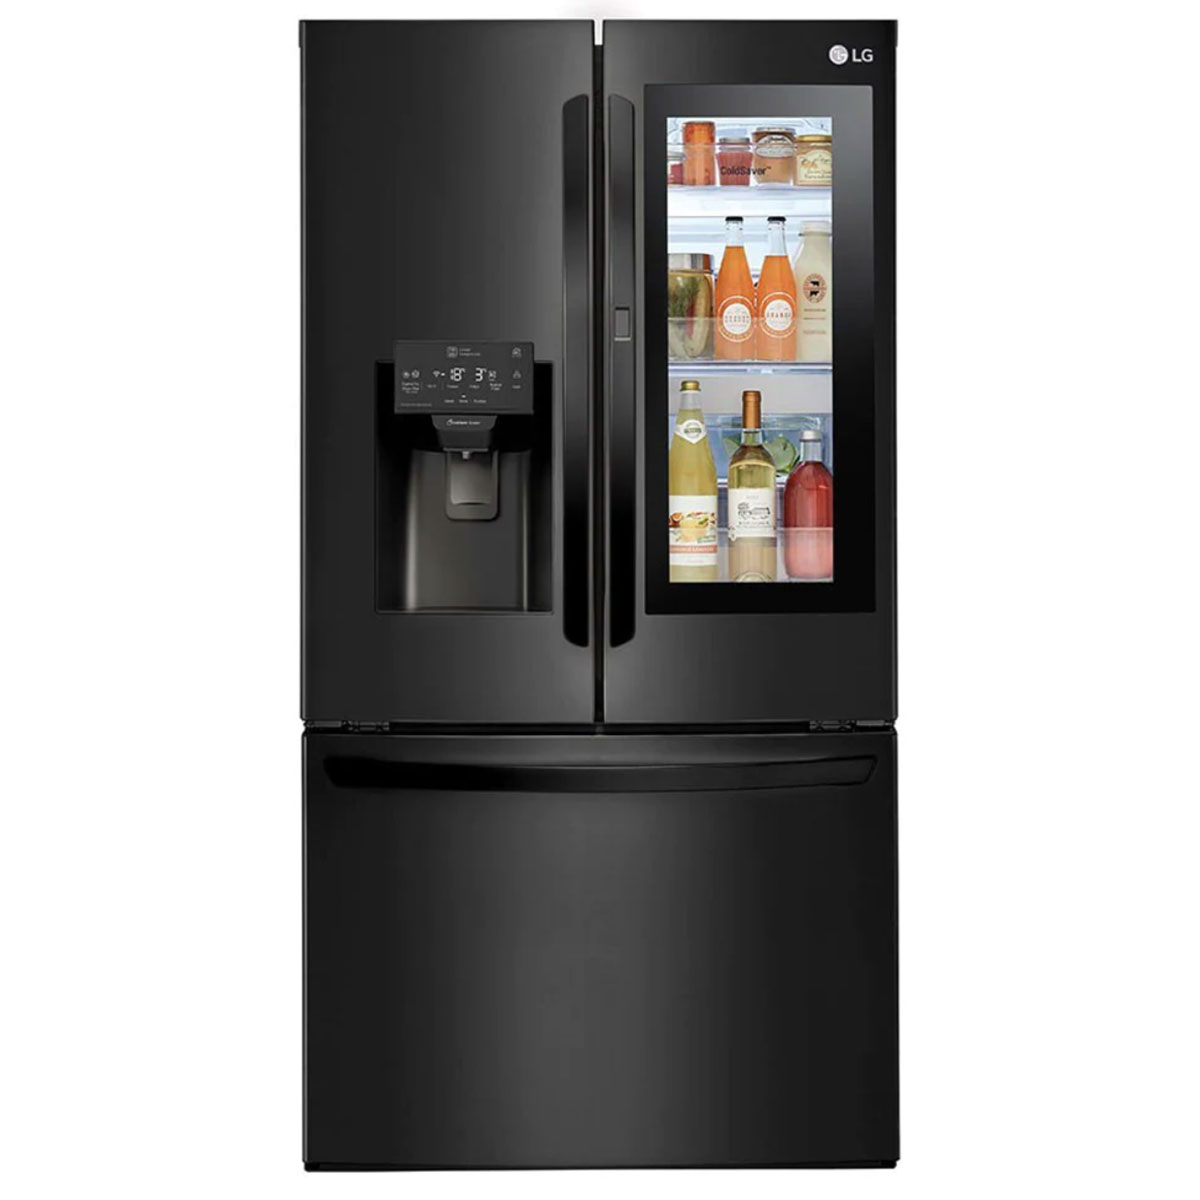 LG’s InstaView door-in-door fridge